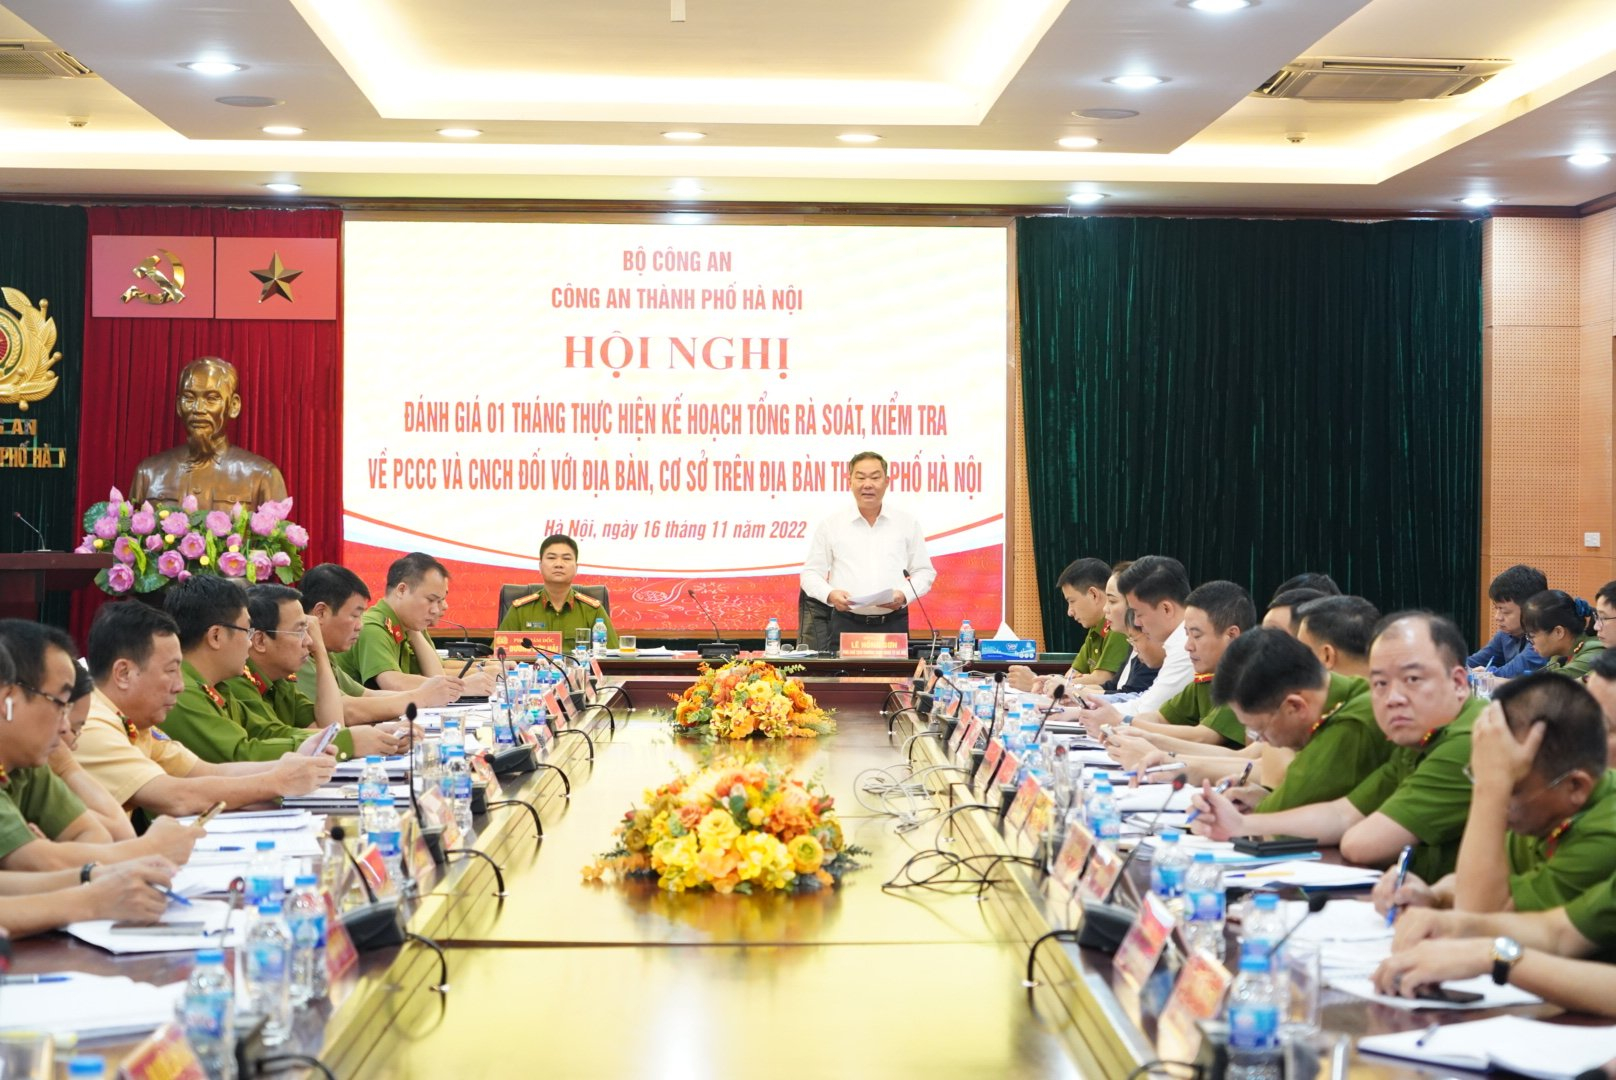 Ông Lê Hồng Sơn, Phó Chủ tịch thường trực UBND thành phố Hà Nội, phát biểu chỉ đạo tại hội nghị.